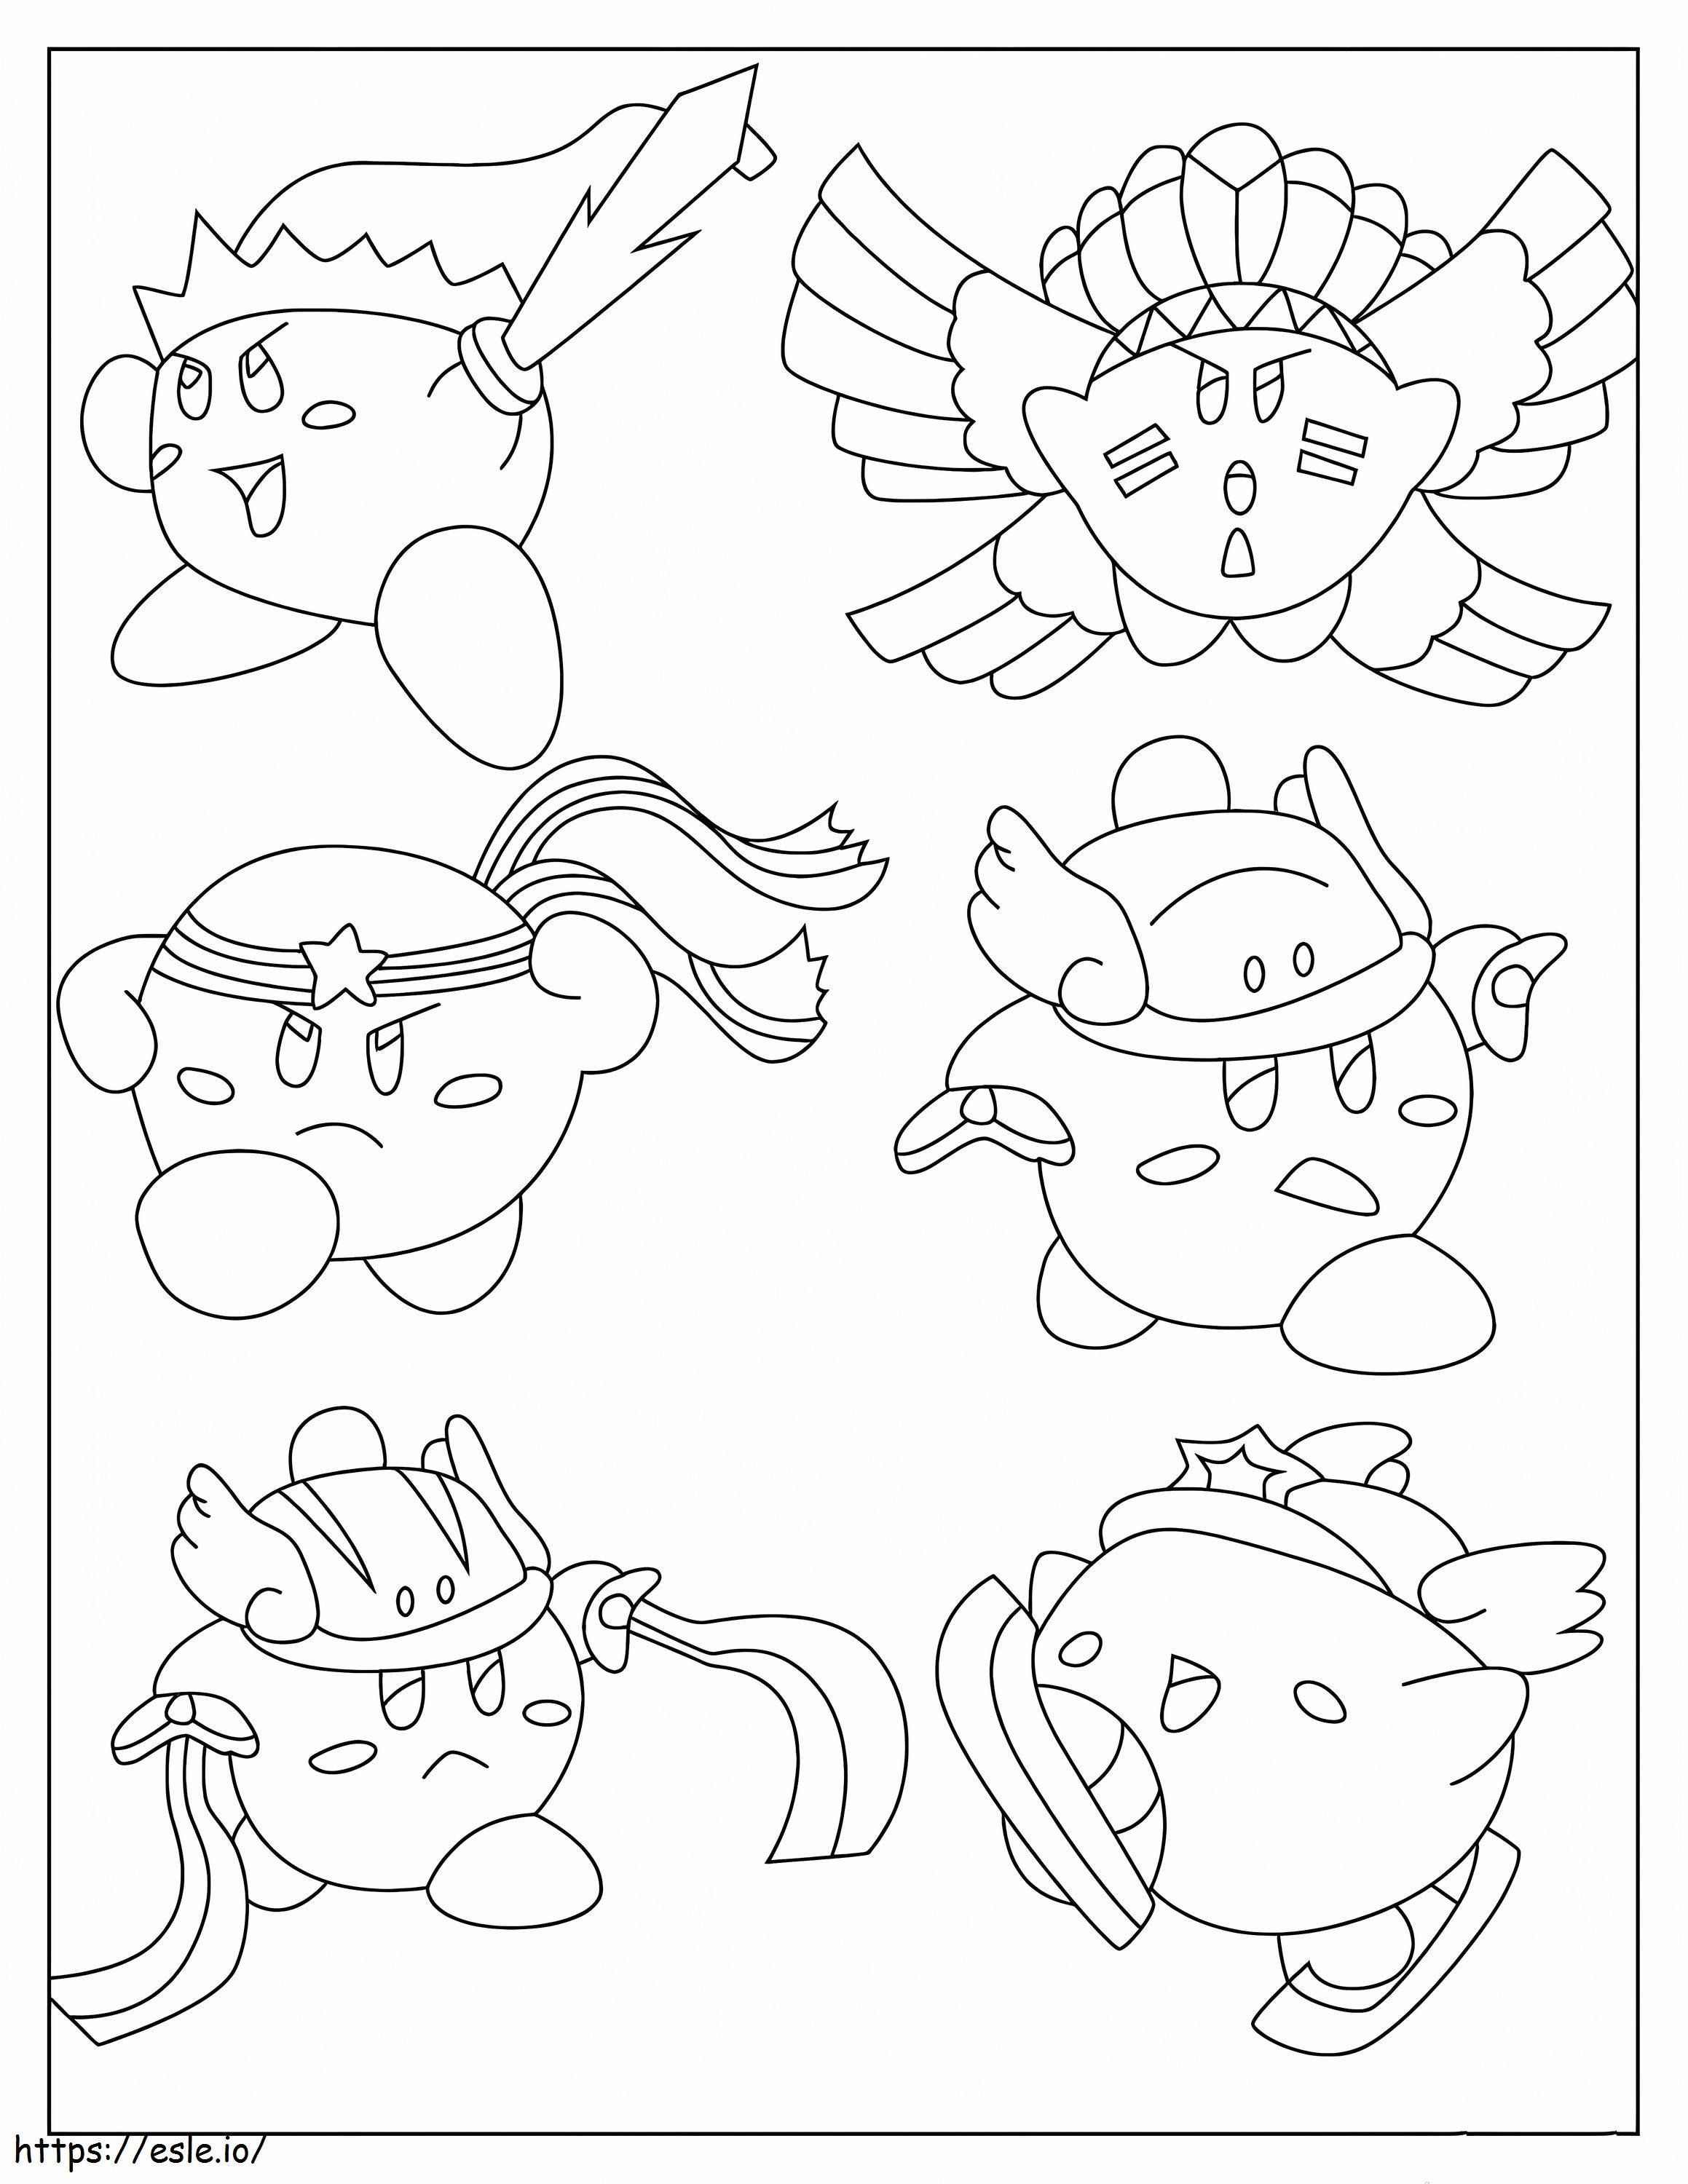 Sechs Kirby-Skins ausmalbilder